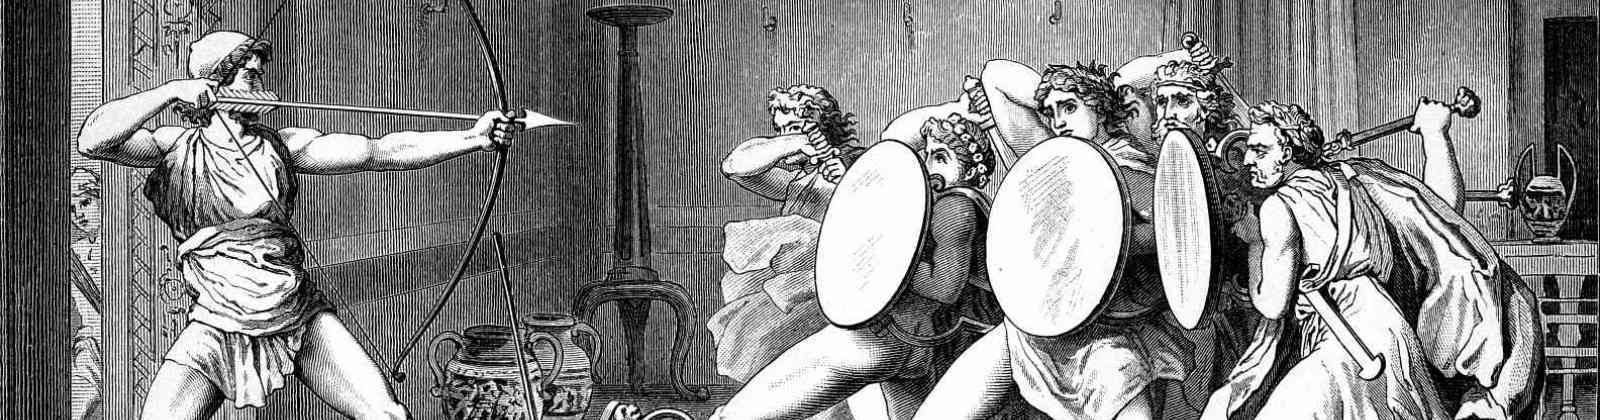 Одиссей женихи. Расправа Одиссея с женихами Пенелопы. Одиссей и женихи Пенелопы. Одиссей и Пенелопа» (метрополитен-музей, Нью-Йорк).